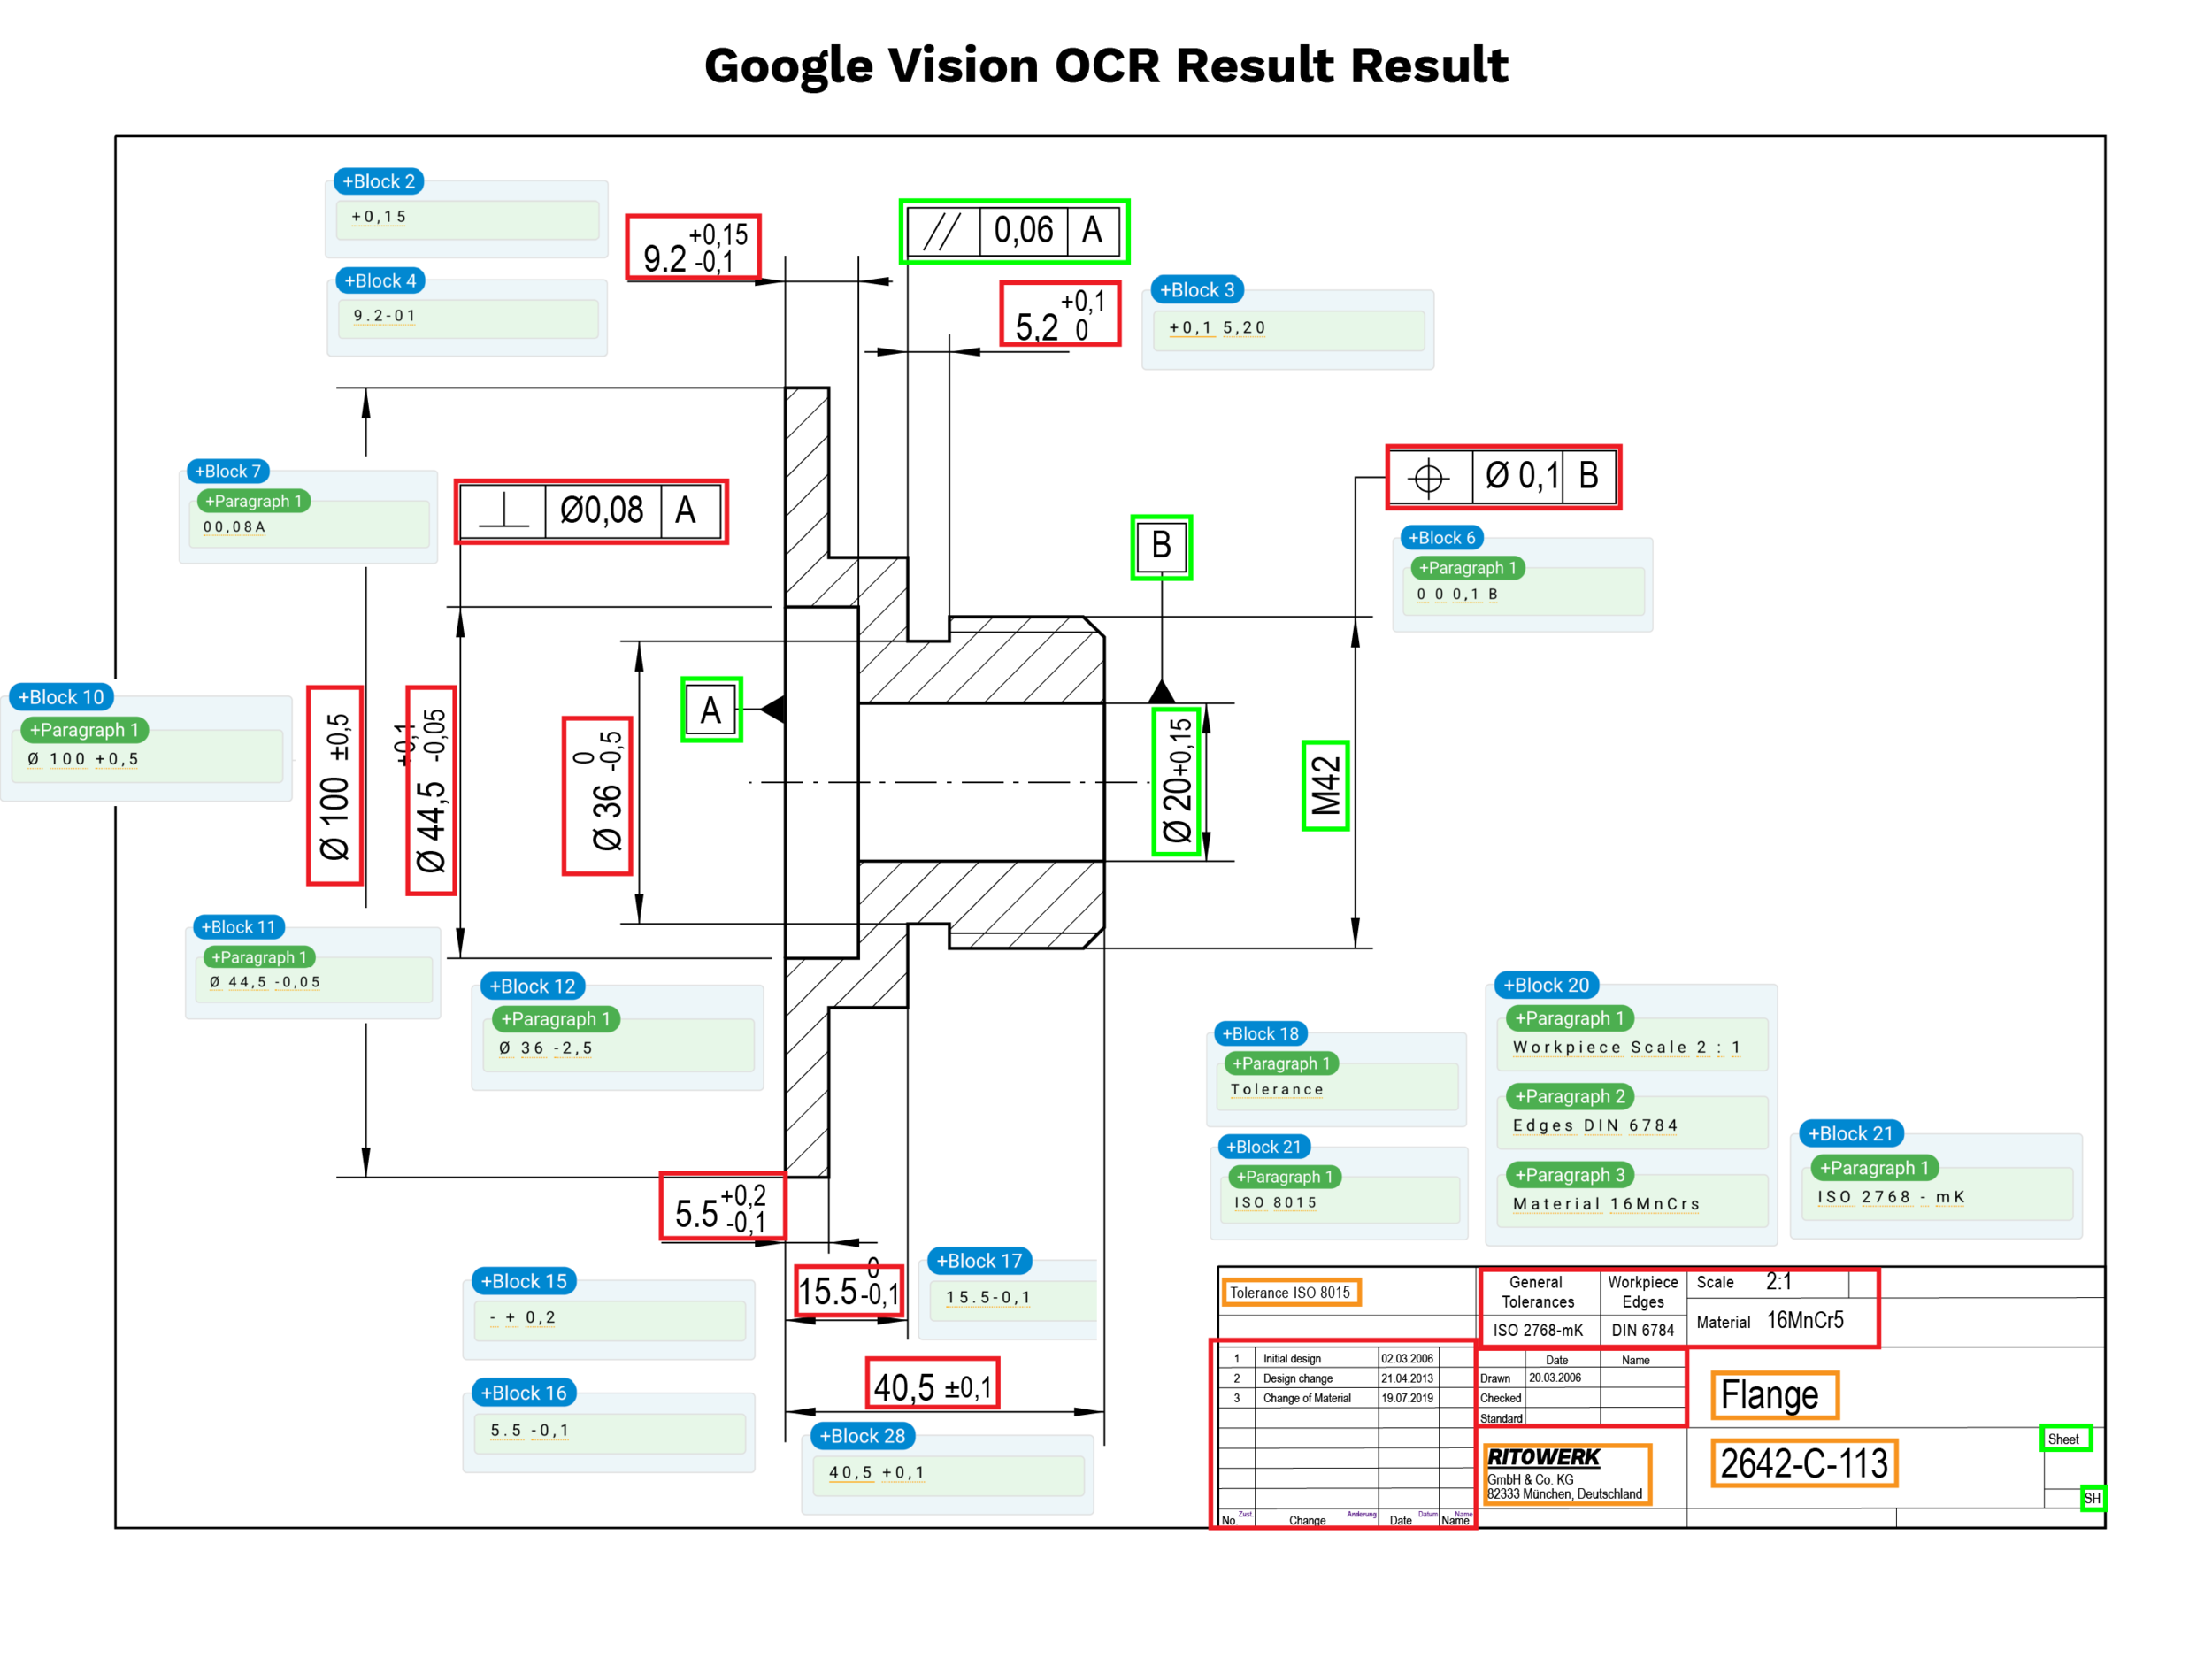 Technische Zeichnungen zu verstehen ist eine Herausforderung mit dem Google Vision OCR-Ergebnis